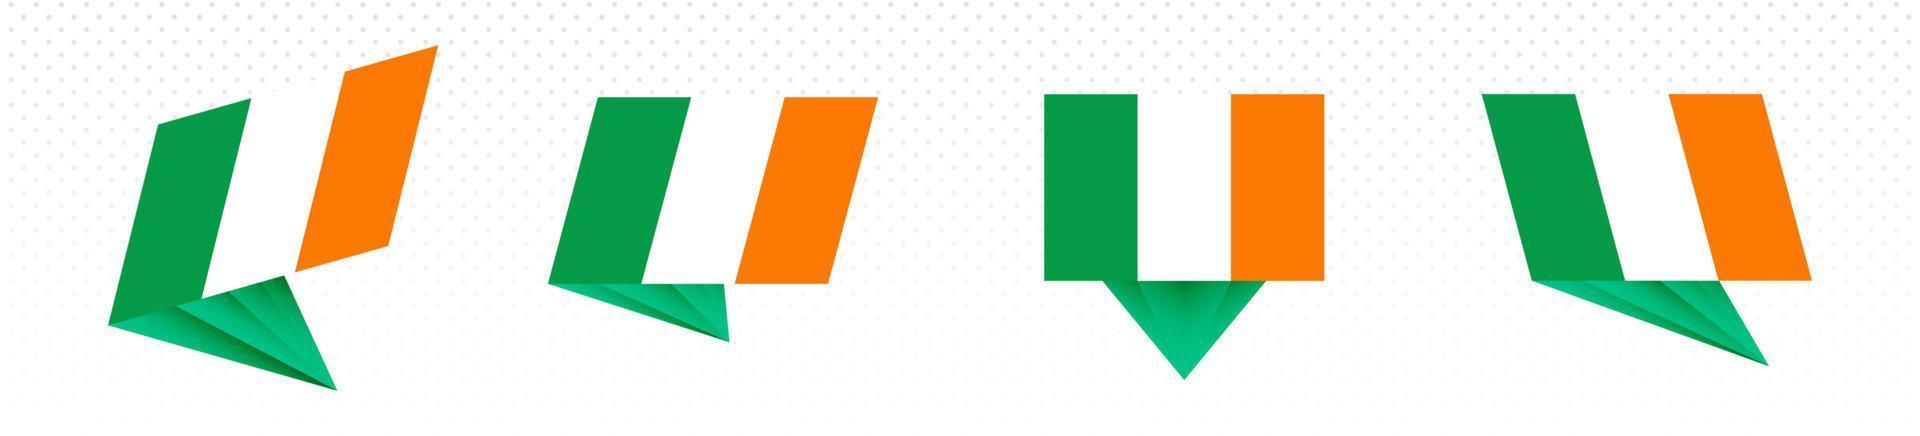 bandera de irlanda en diseño abstracto moderno, juego de banderas. vector